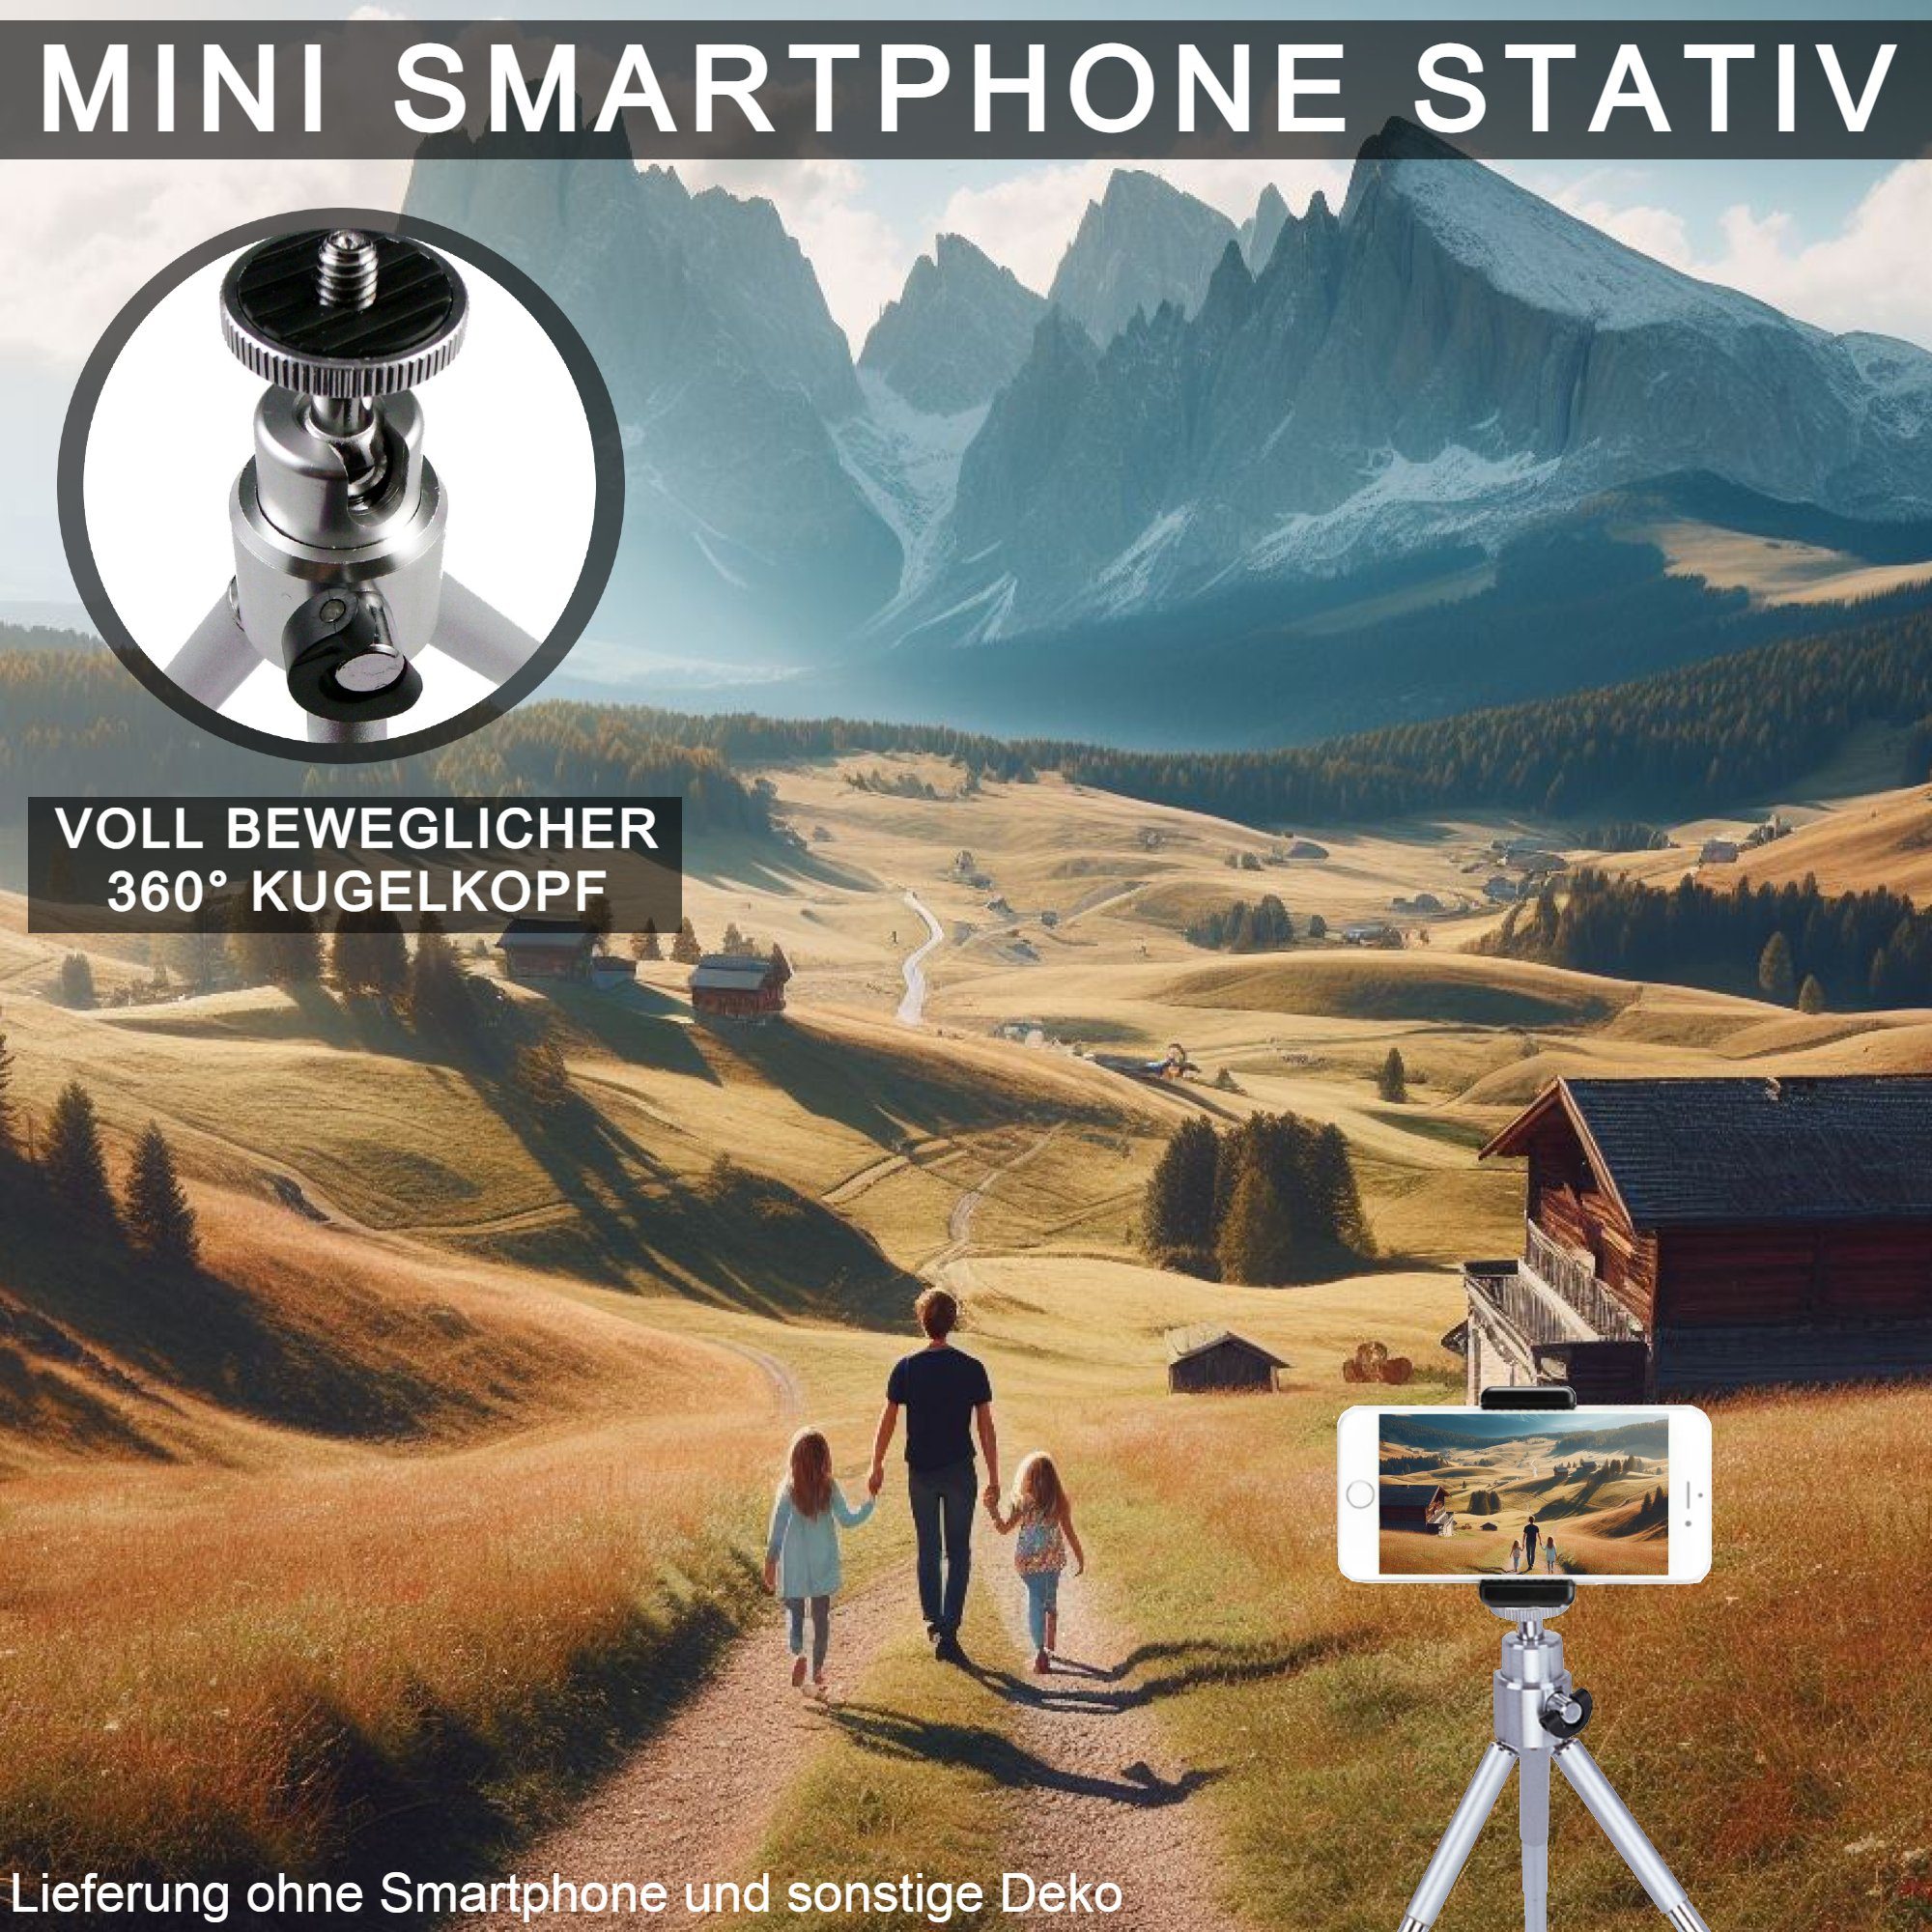 TronicXL Tisch Stativ Smartphone Ministativ Sony Ständer zb E4 für Xperia Miro Sola Handy